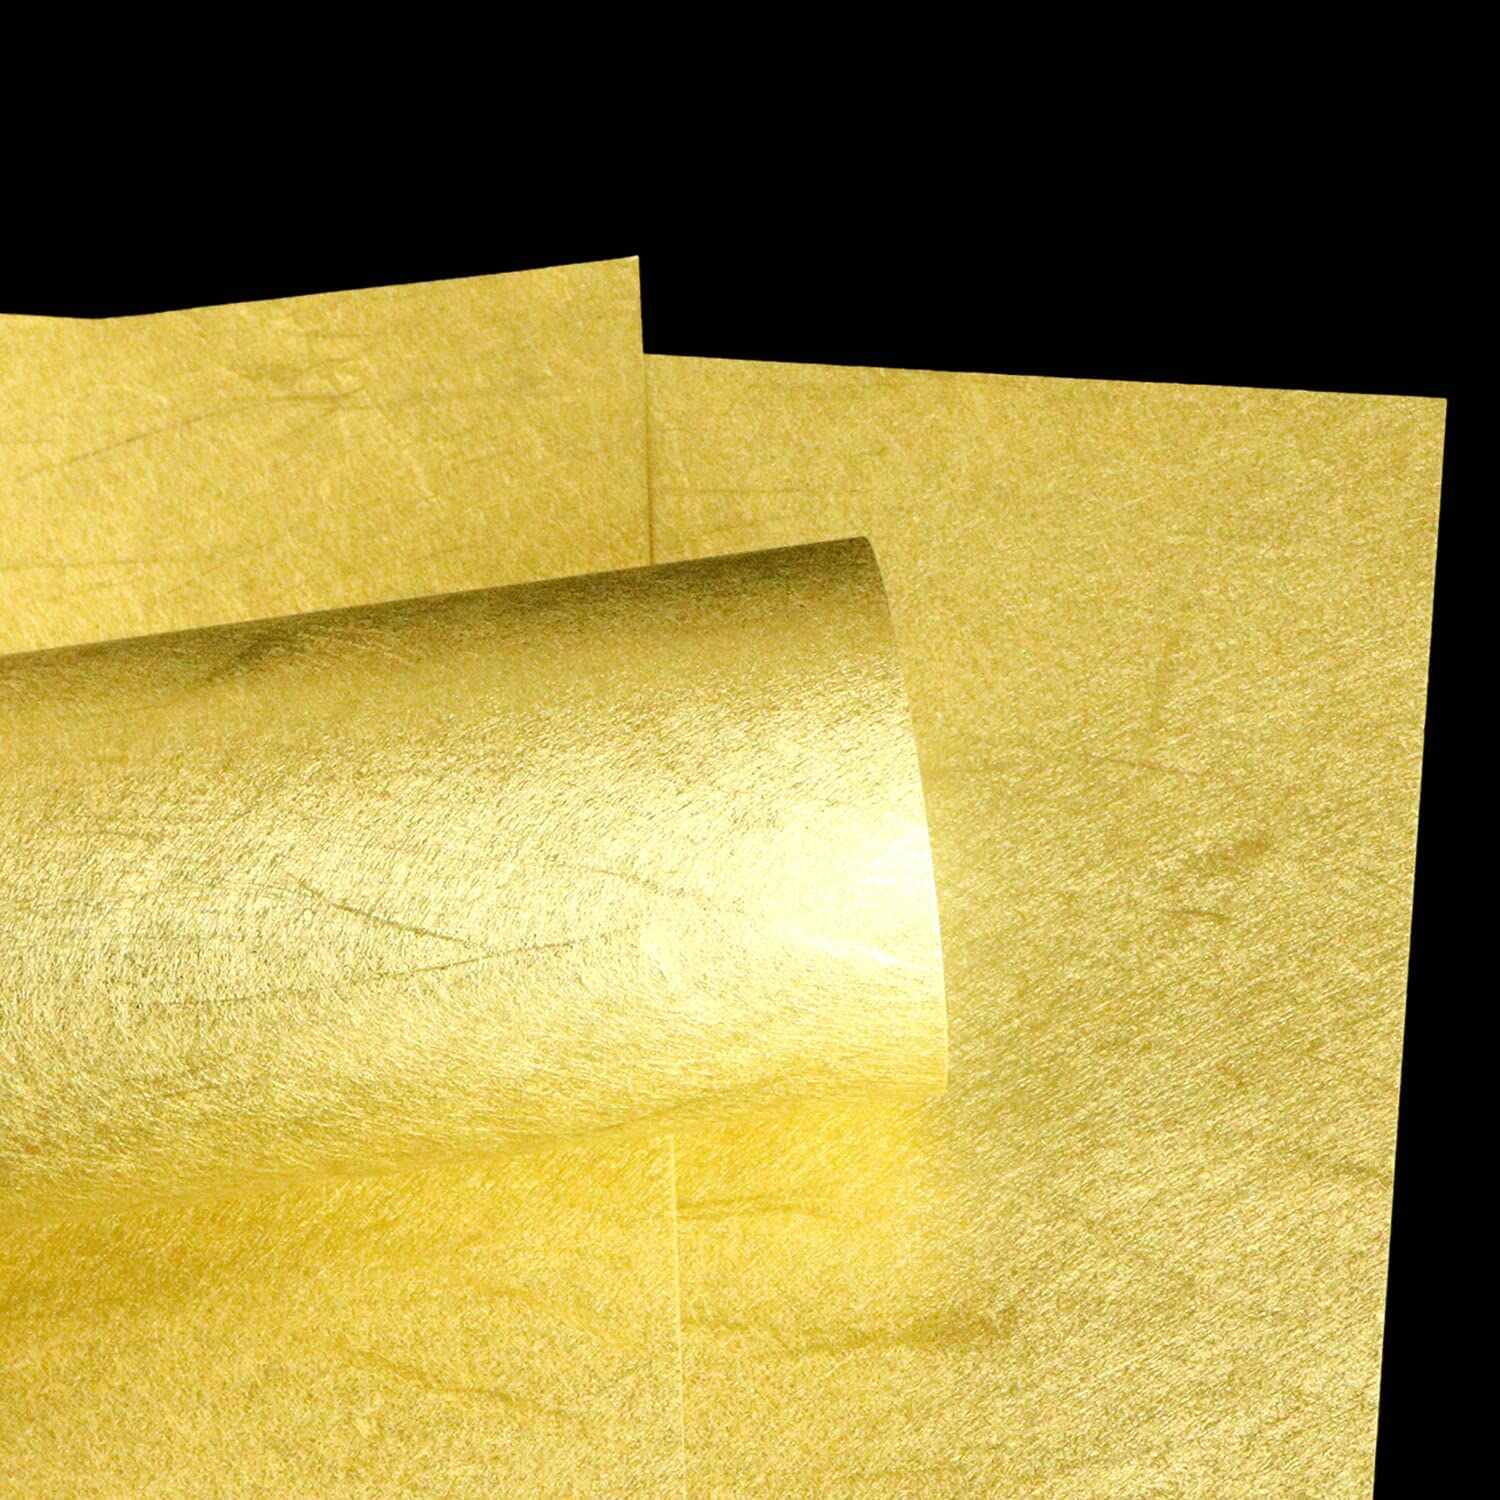 国産】金の雲龍紙 A4サイズ(210x297mm) 金箔に雲竜柄の入った最高級和紙〔3枚入〕きらきらぷんぷん丸 - きらきらぷんぷん丸